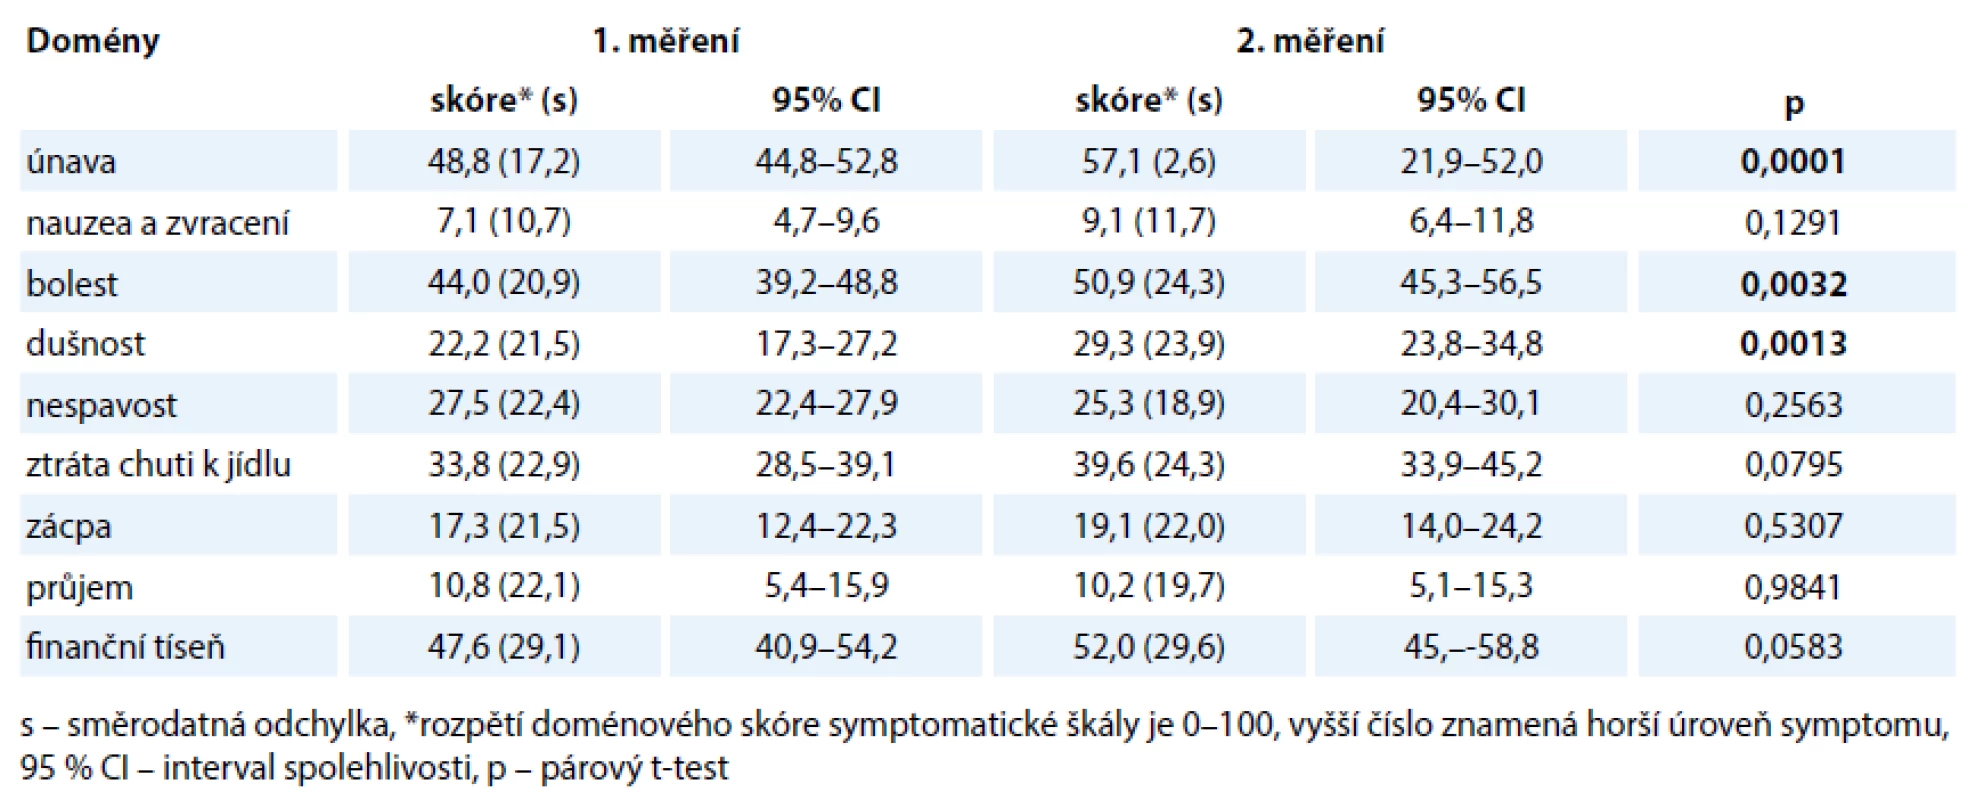 Porovnání hodnocení symptomatické škály kvality života dotazníkem EORTCQOL-30 při prvním a druhém měření.